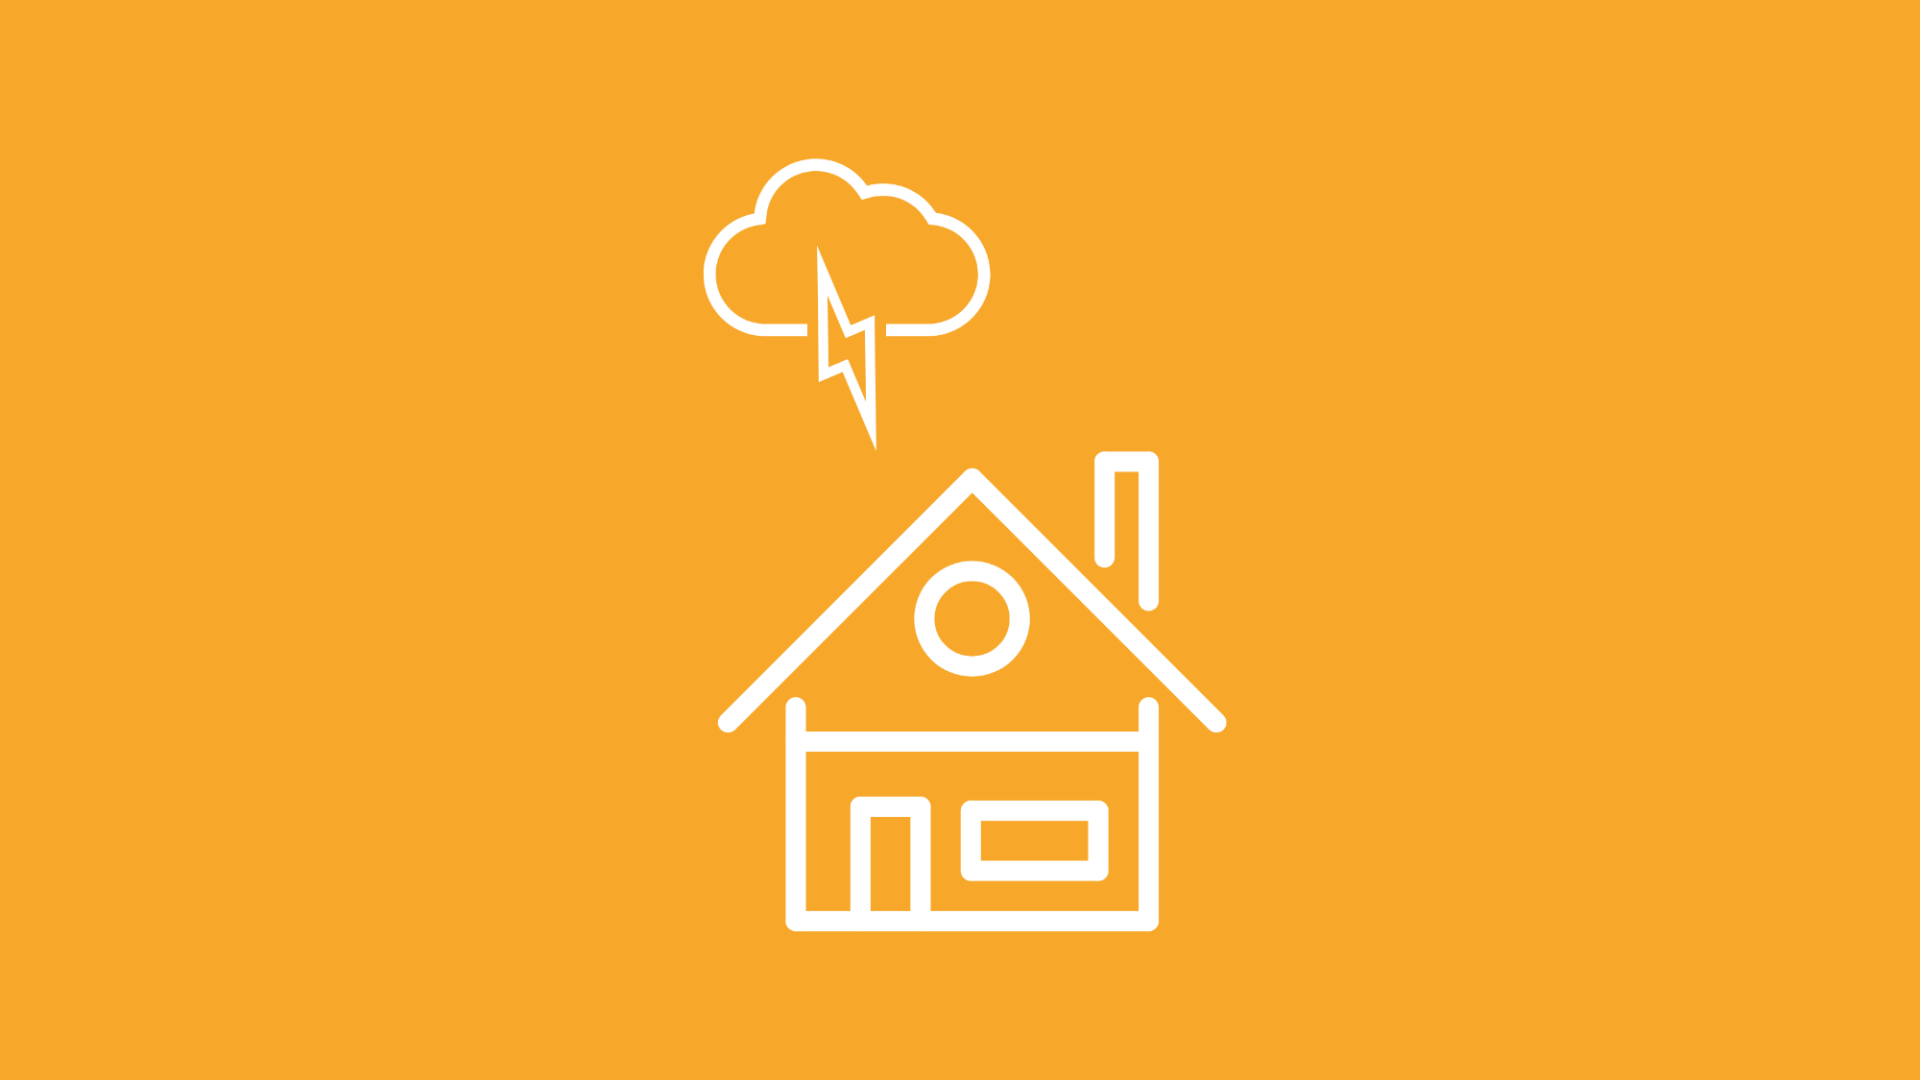 Über einem Haus im Icon-Stil ist eine Gewitterwolke mit einem Blitz zu sehen – es droht ein Überspannungsschaden durch Blitzeinschlag